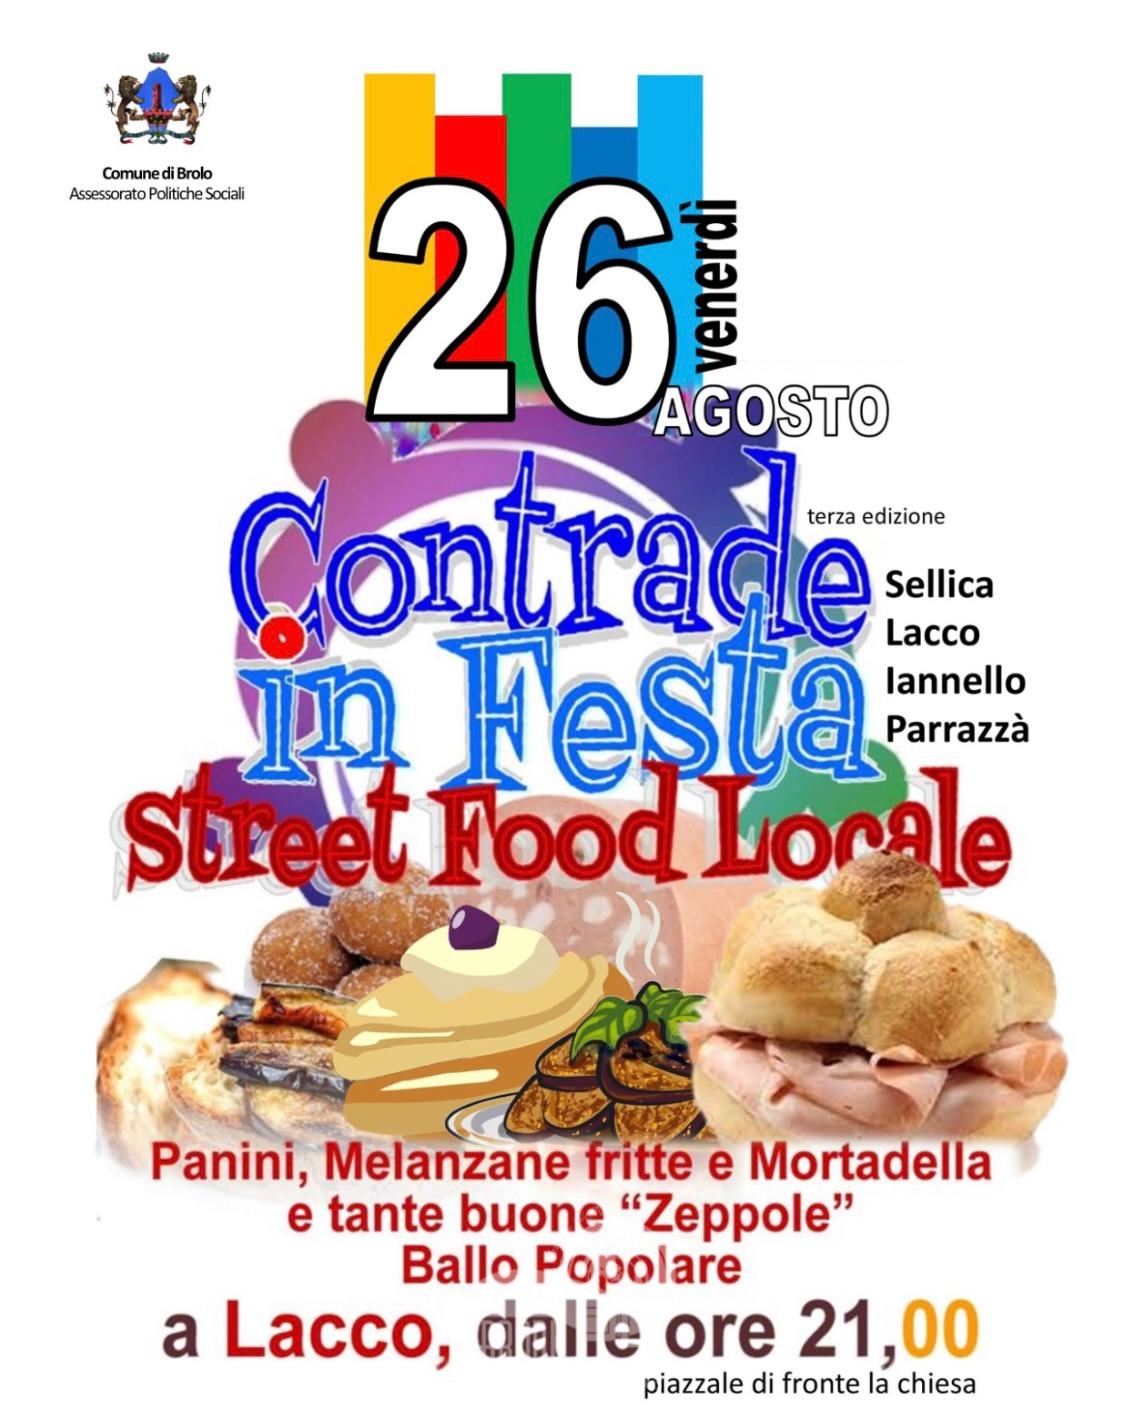 Brolo – Il 26 agosto “Contrade in Festa” Street Food Locale